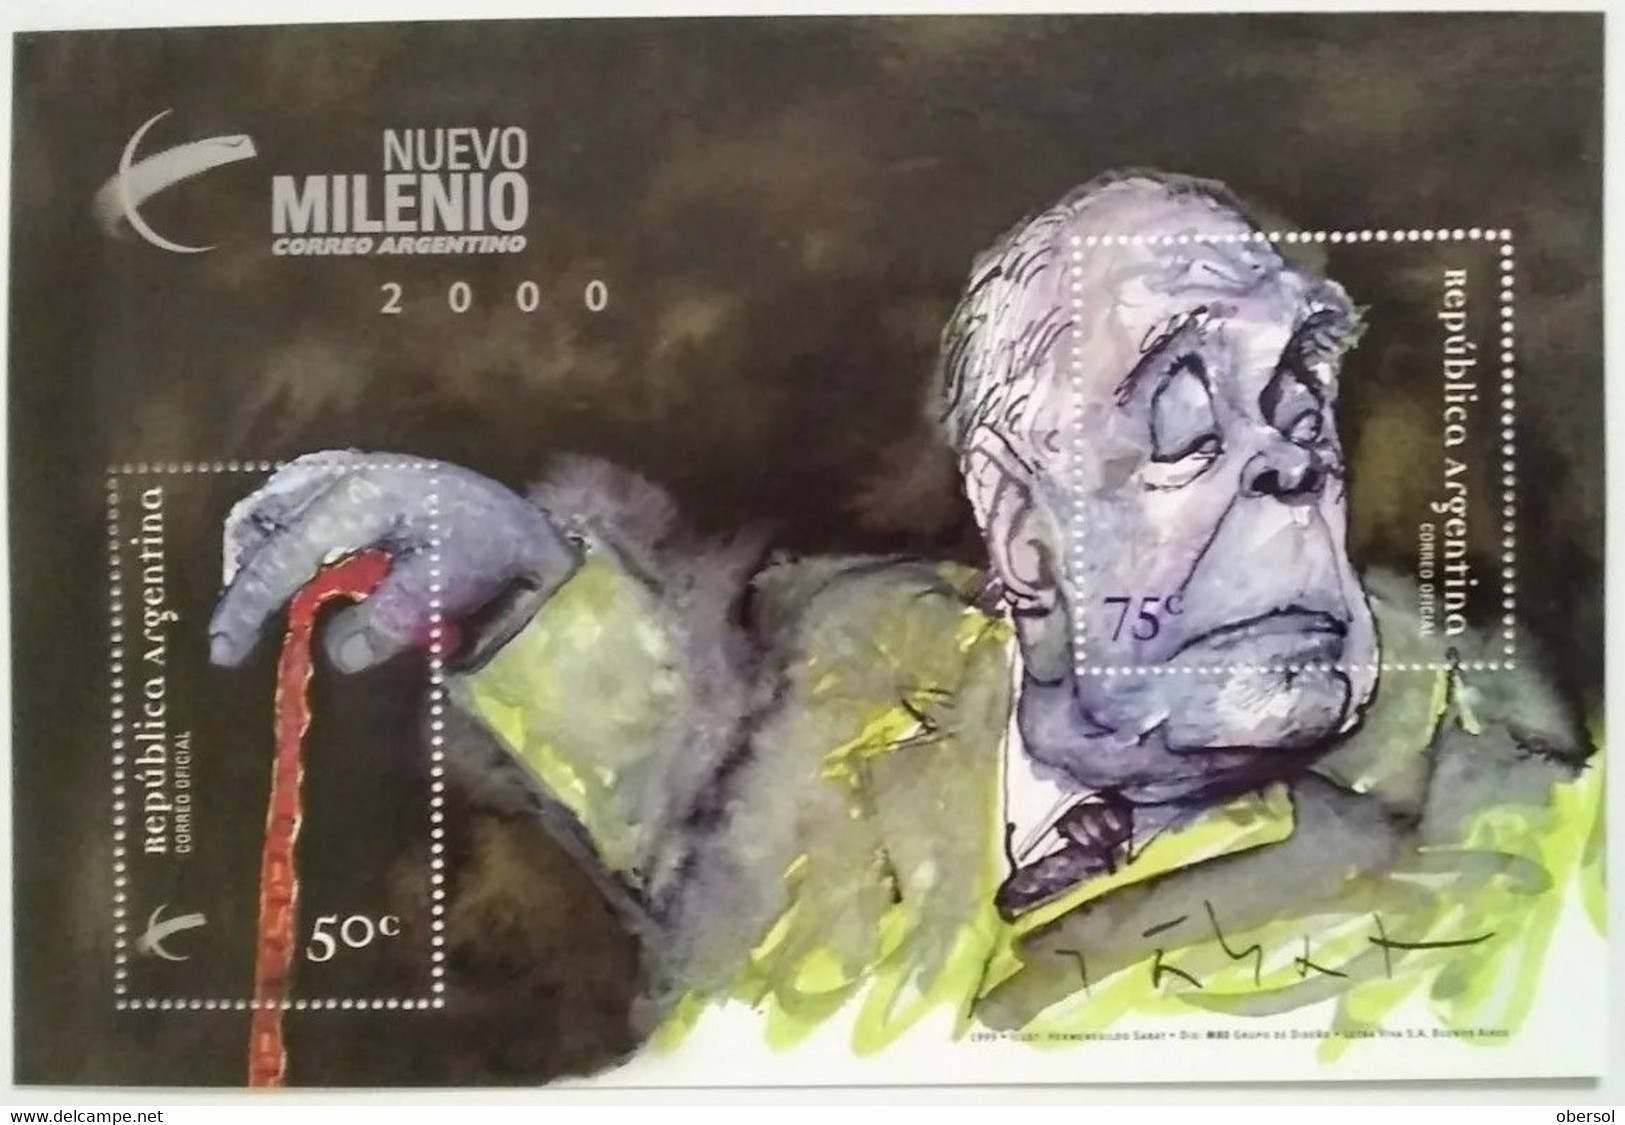 Argentina 1999 Borges Nuevo Milenio Souvenir Sheet MNH - Nuevos